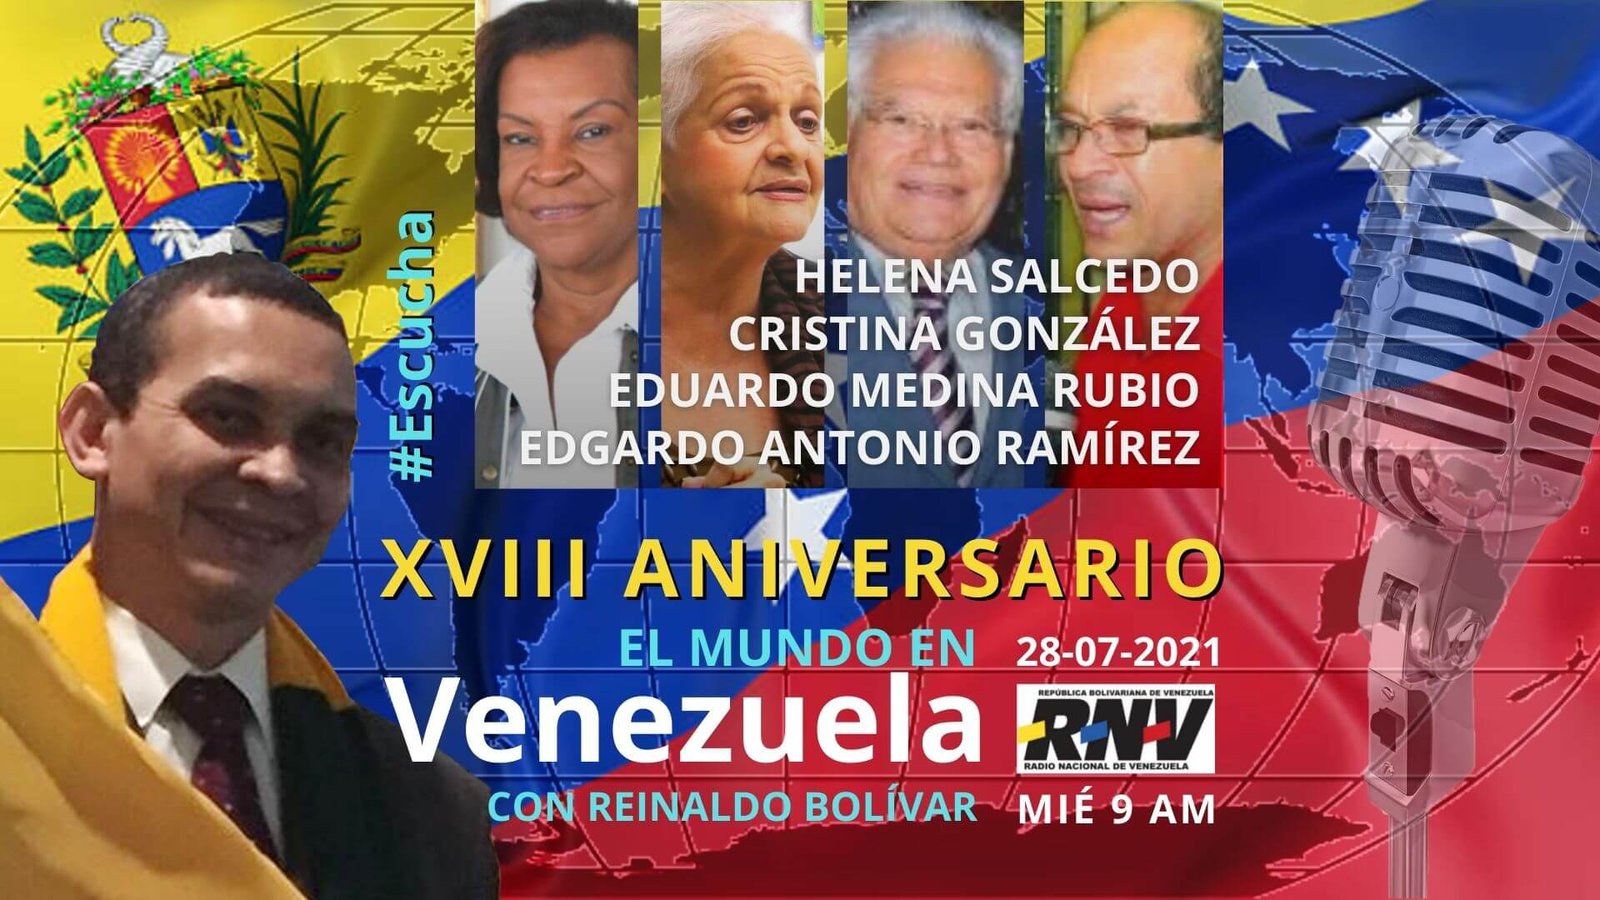  - 4 invitados especiales junto a Reinaldo Bolívar - 